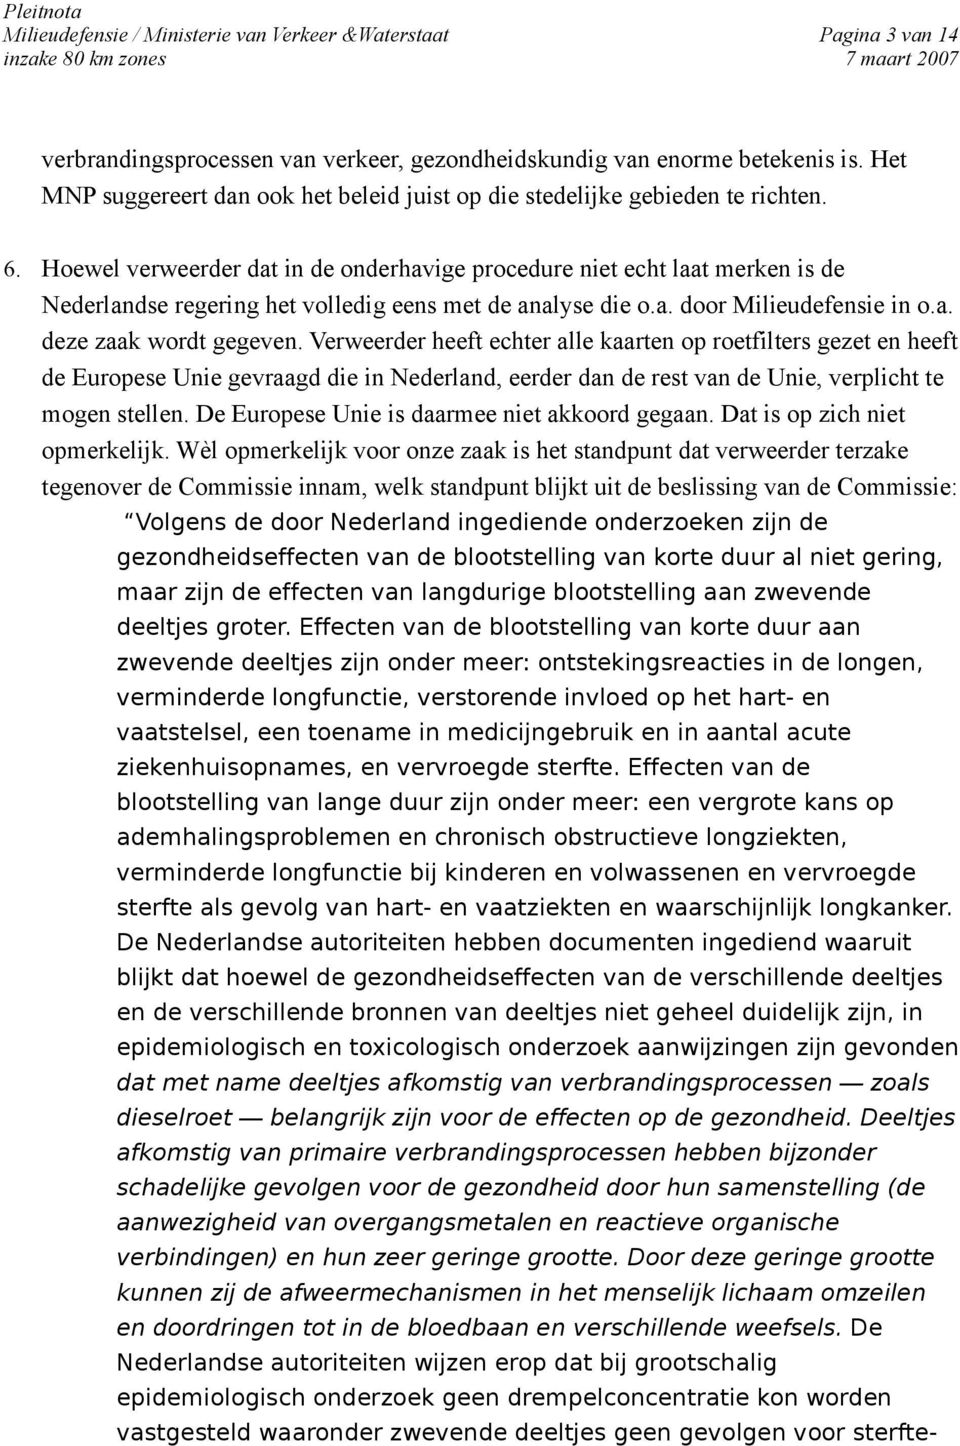 Hoewel verweerder dat in de onderhavige procedure niet echt laat merken is de Nederlandse regering het volledig eens met de analyse die o.a. door Milieudefensie in o.a. deze zaak wordt gegeven.